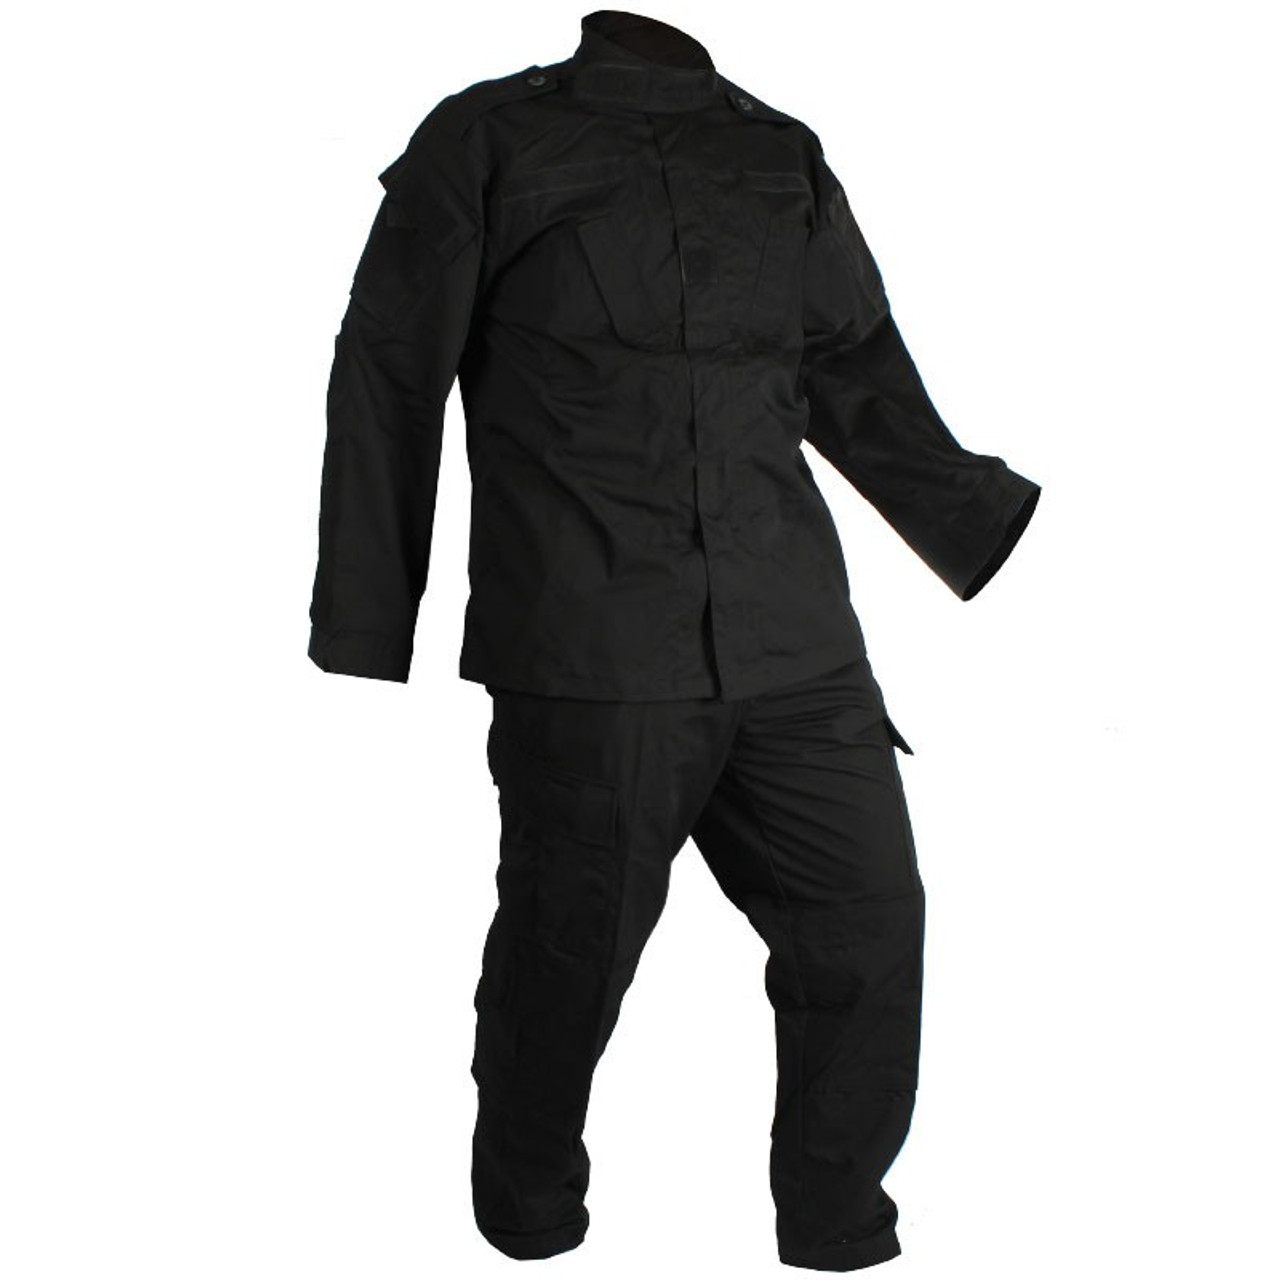 Combat Uniform - 2 Piece Set - Pants and Jacket - Black